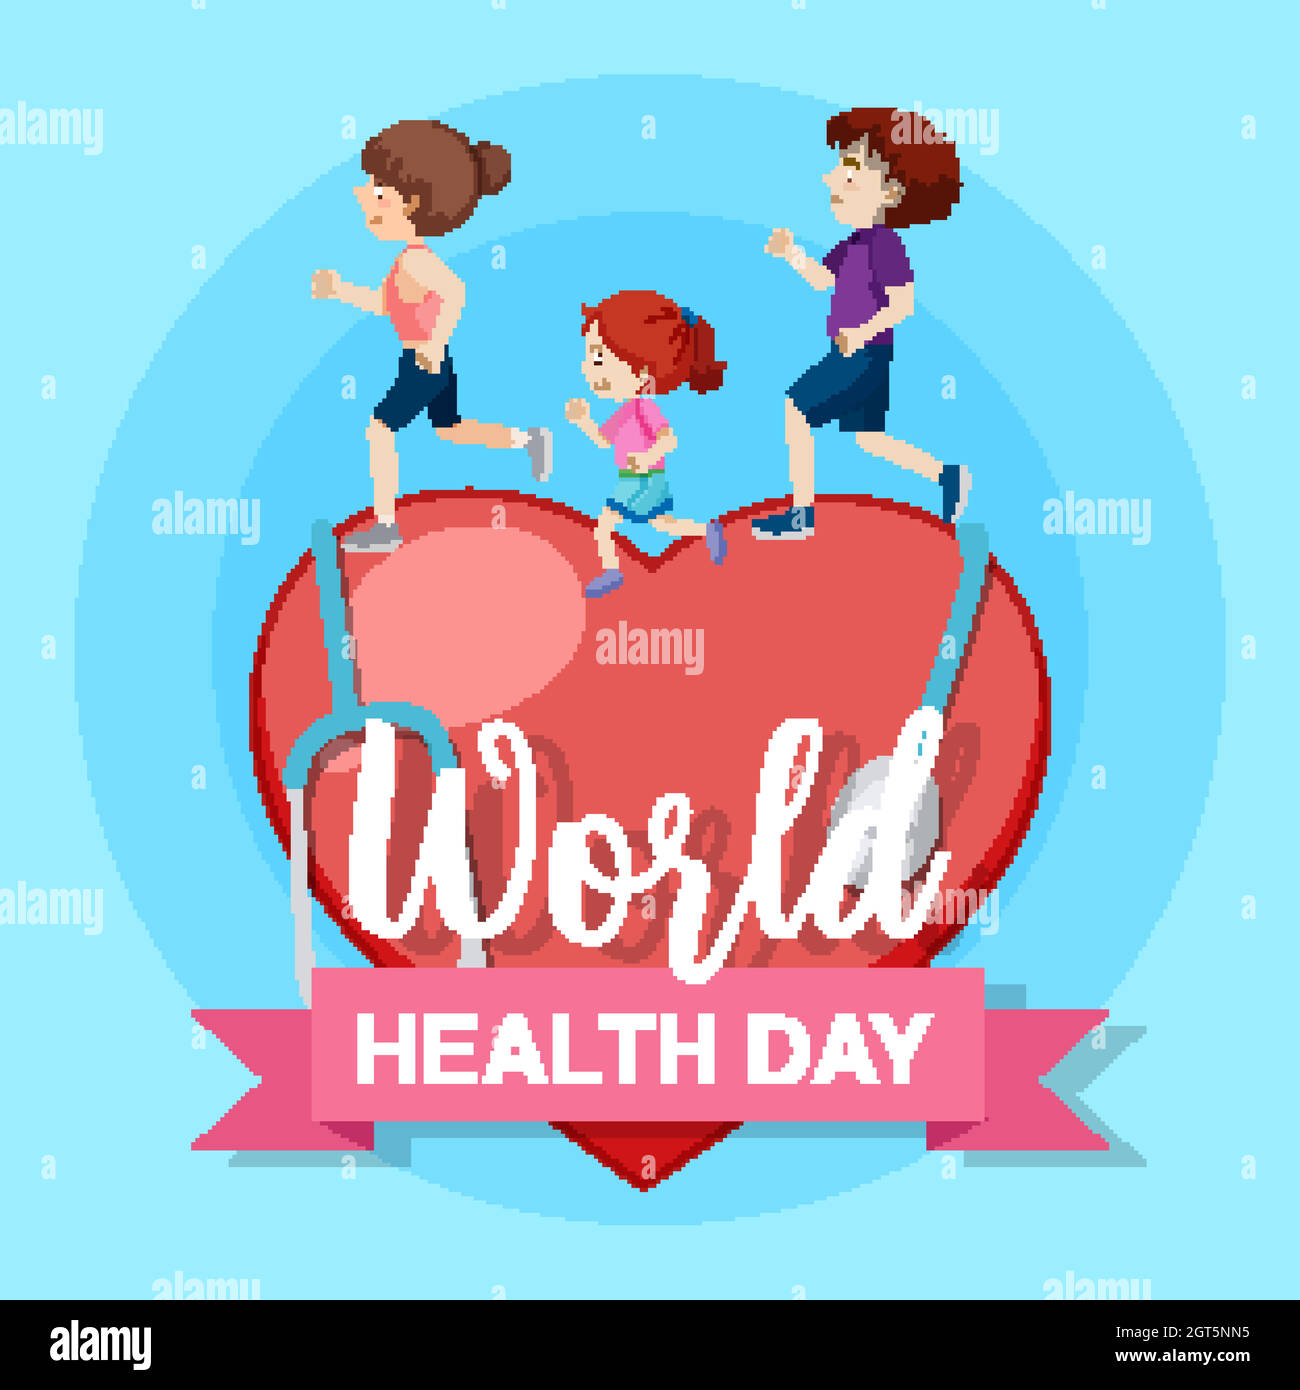 Affiche pour la journée mondiale de la santé avec des personnes en train de courir Illustration de Vecteur